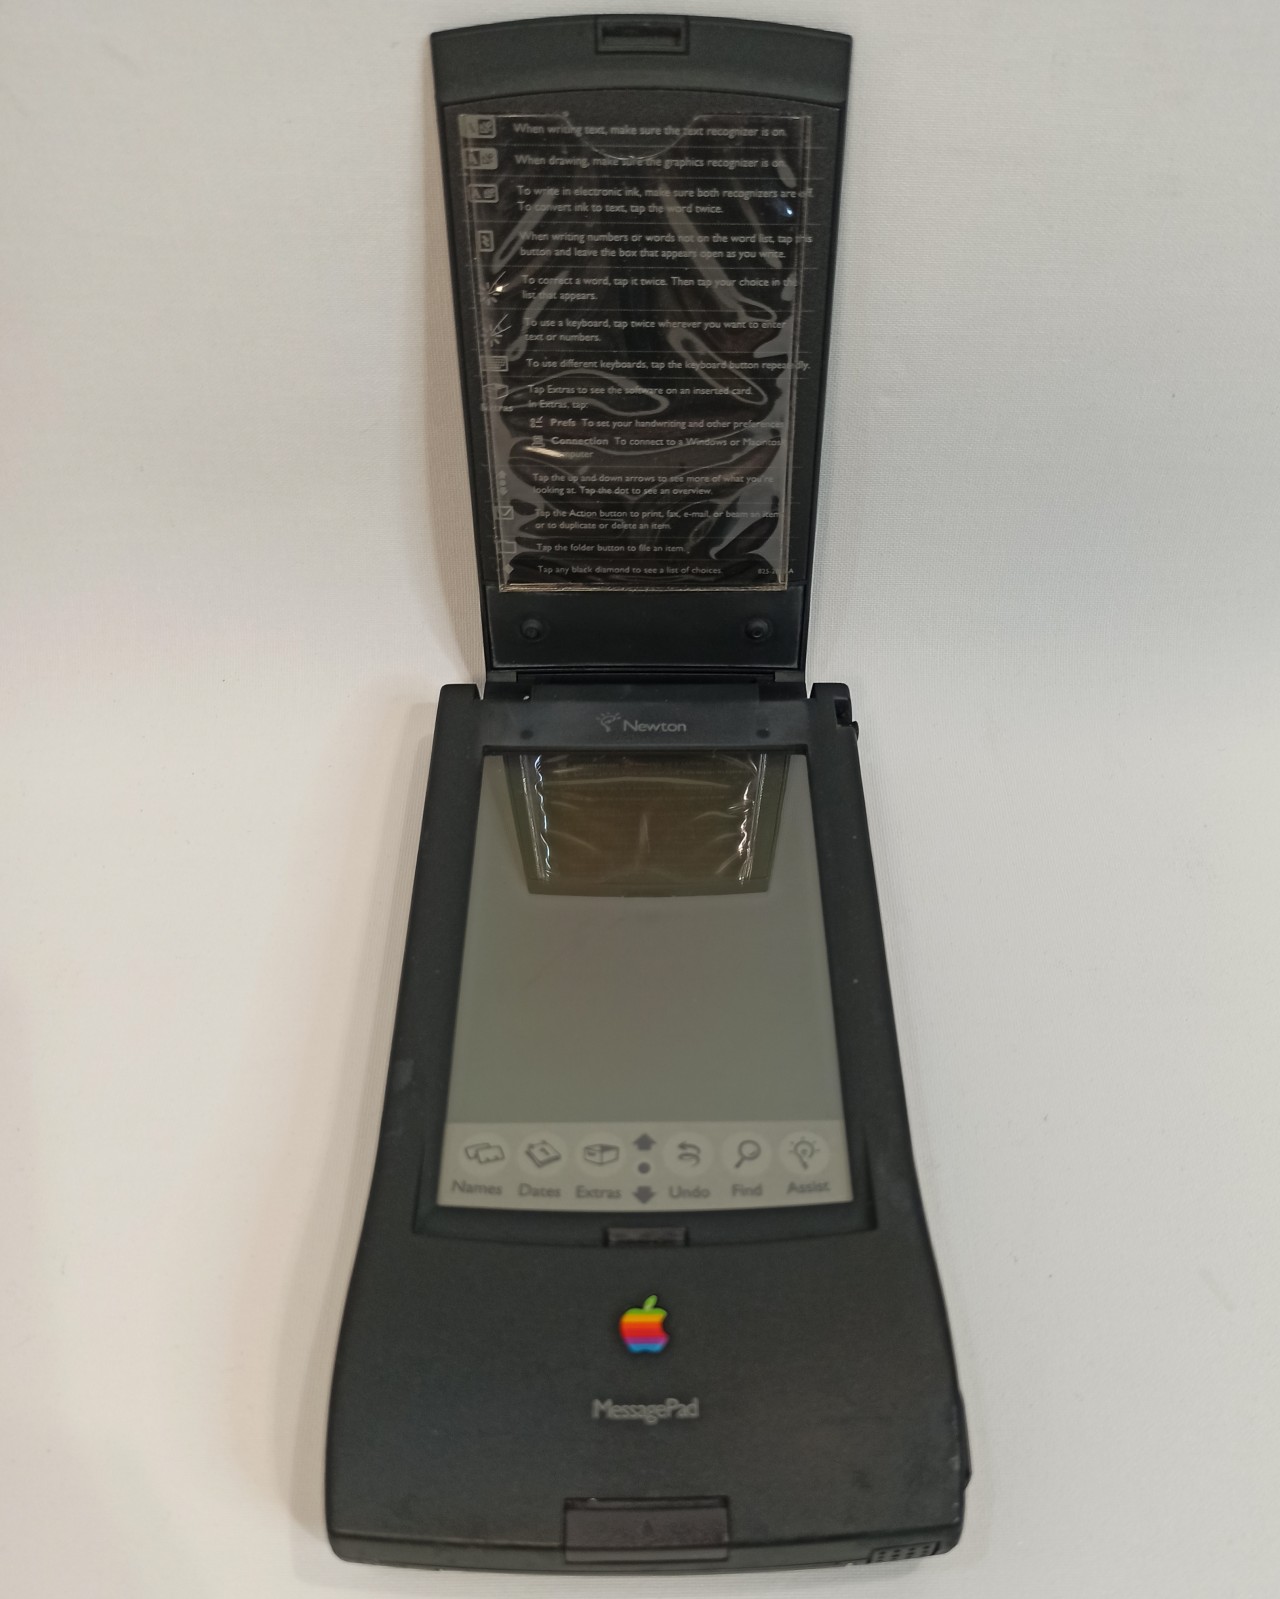 Apple MessagePad Newton 